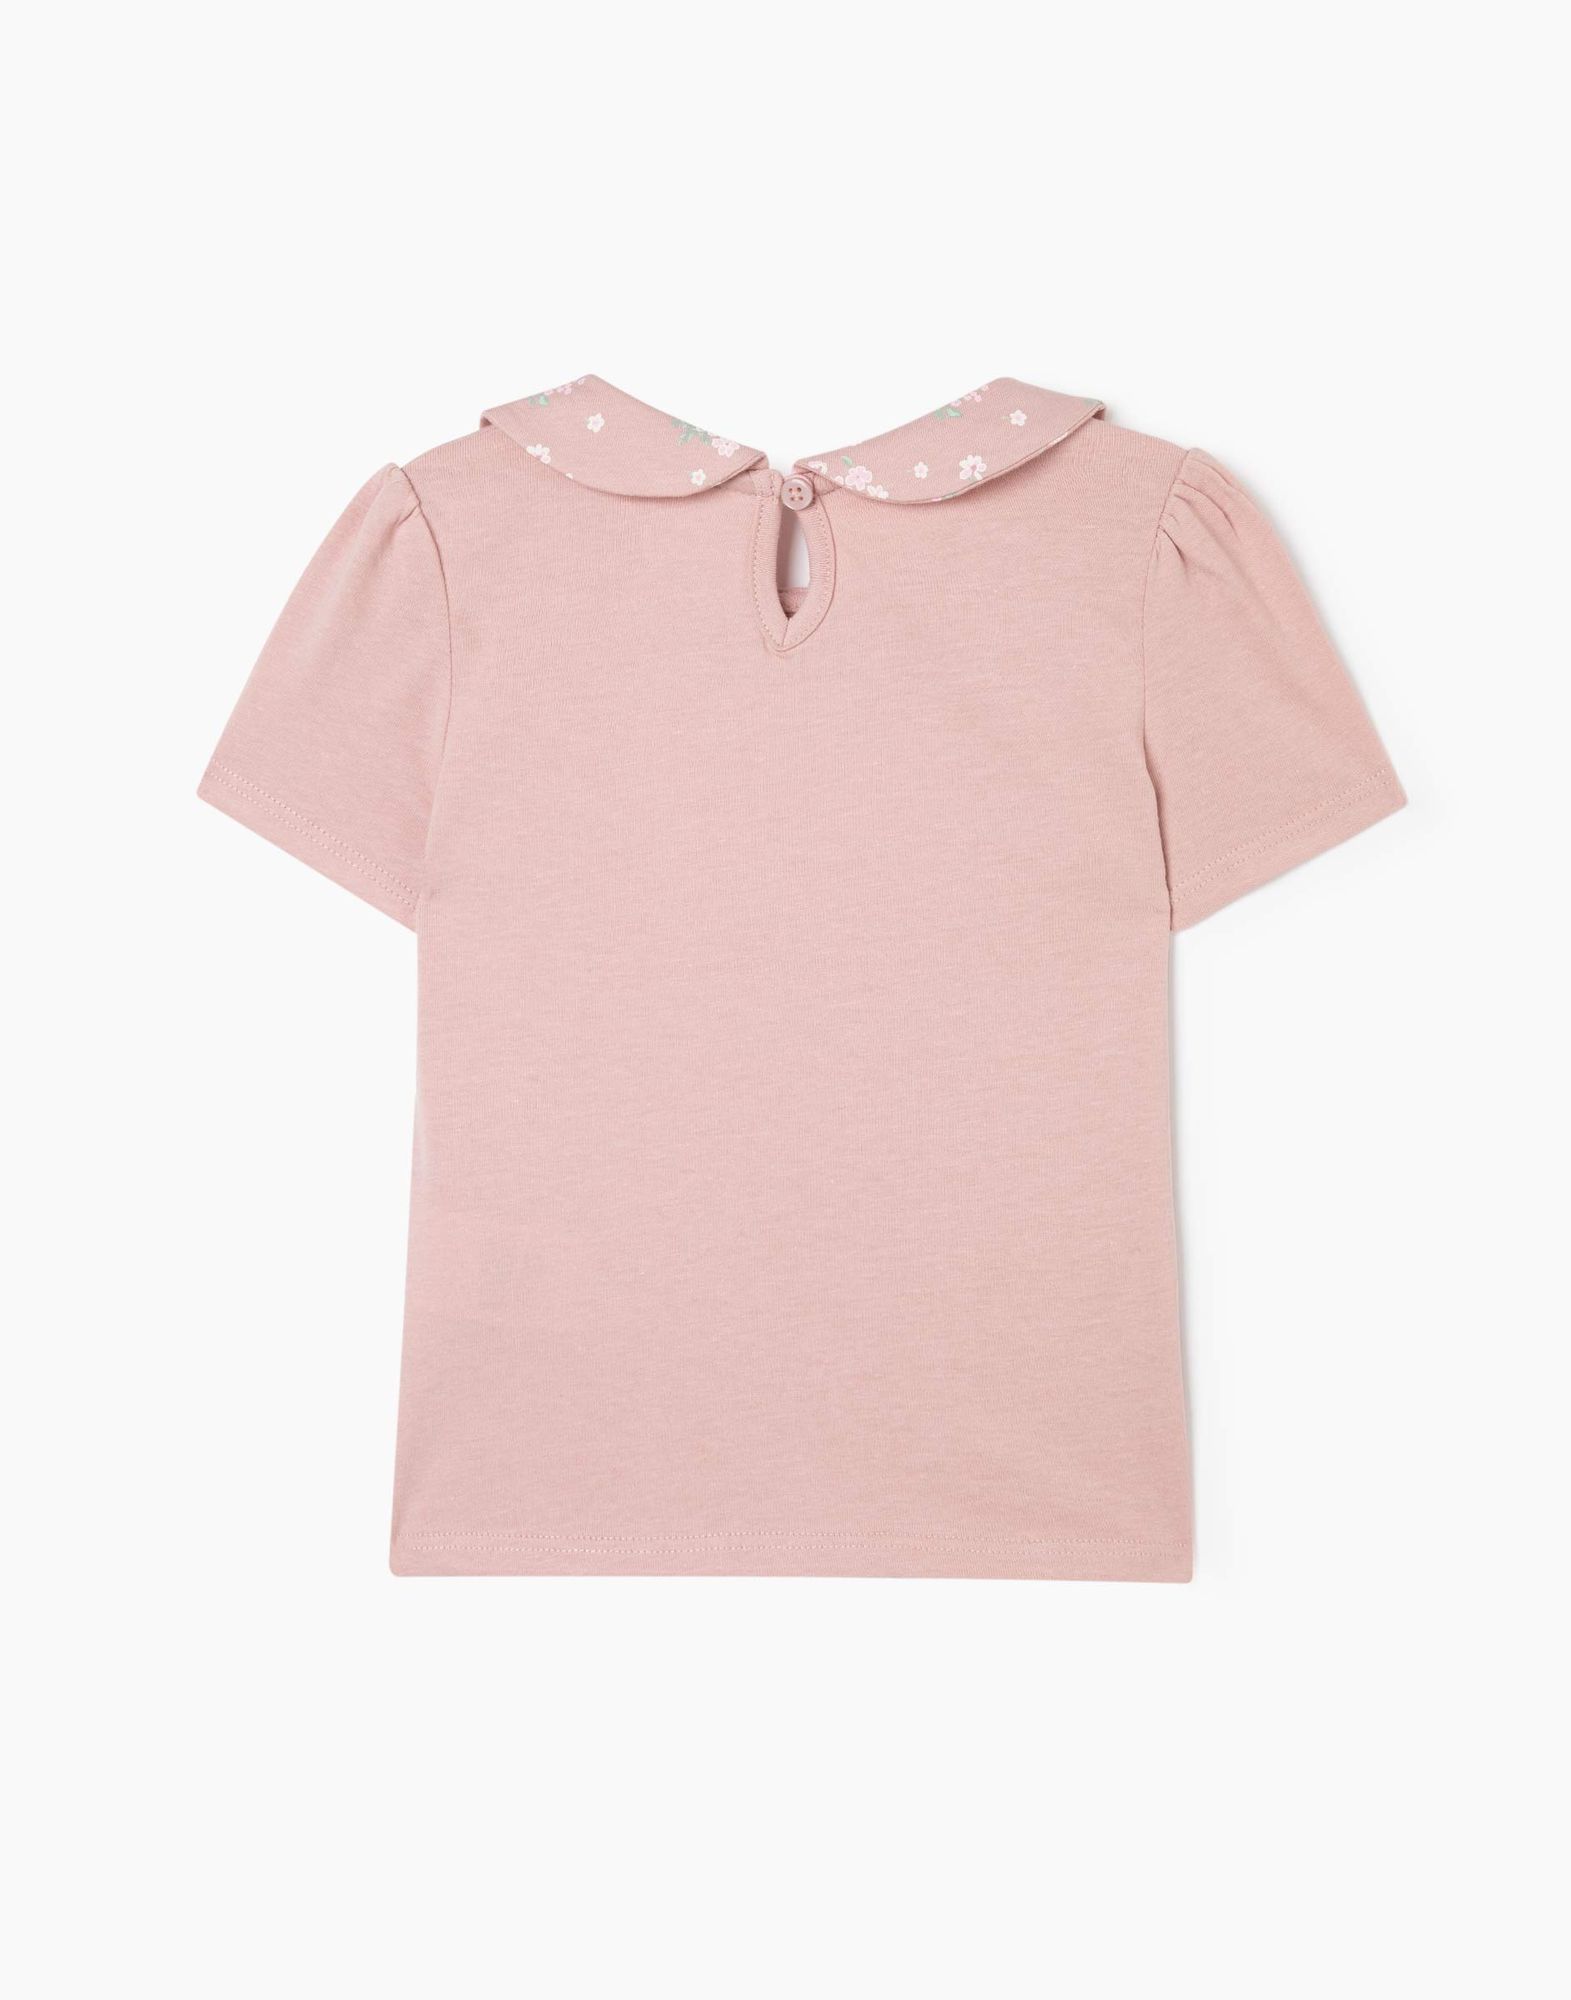 Пыльно-розовая футболка с воротником и вышивкой для девочки-1